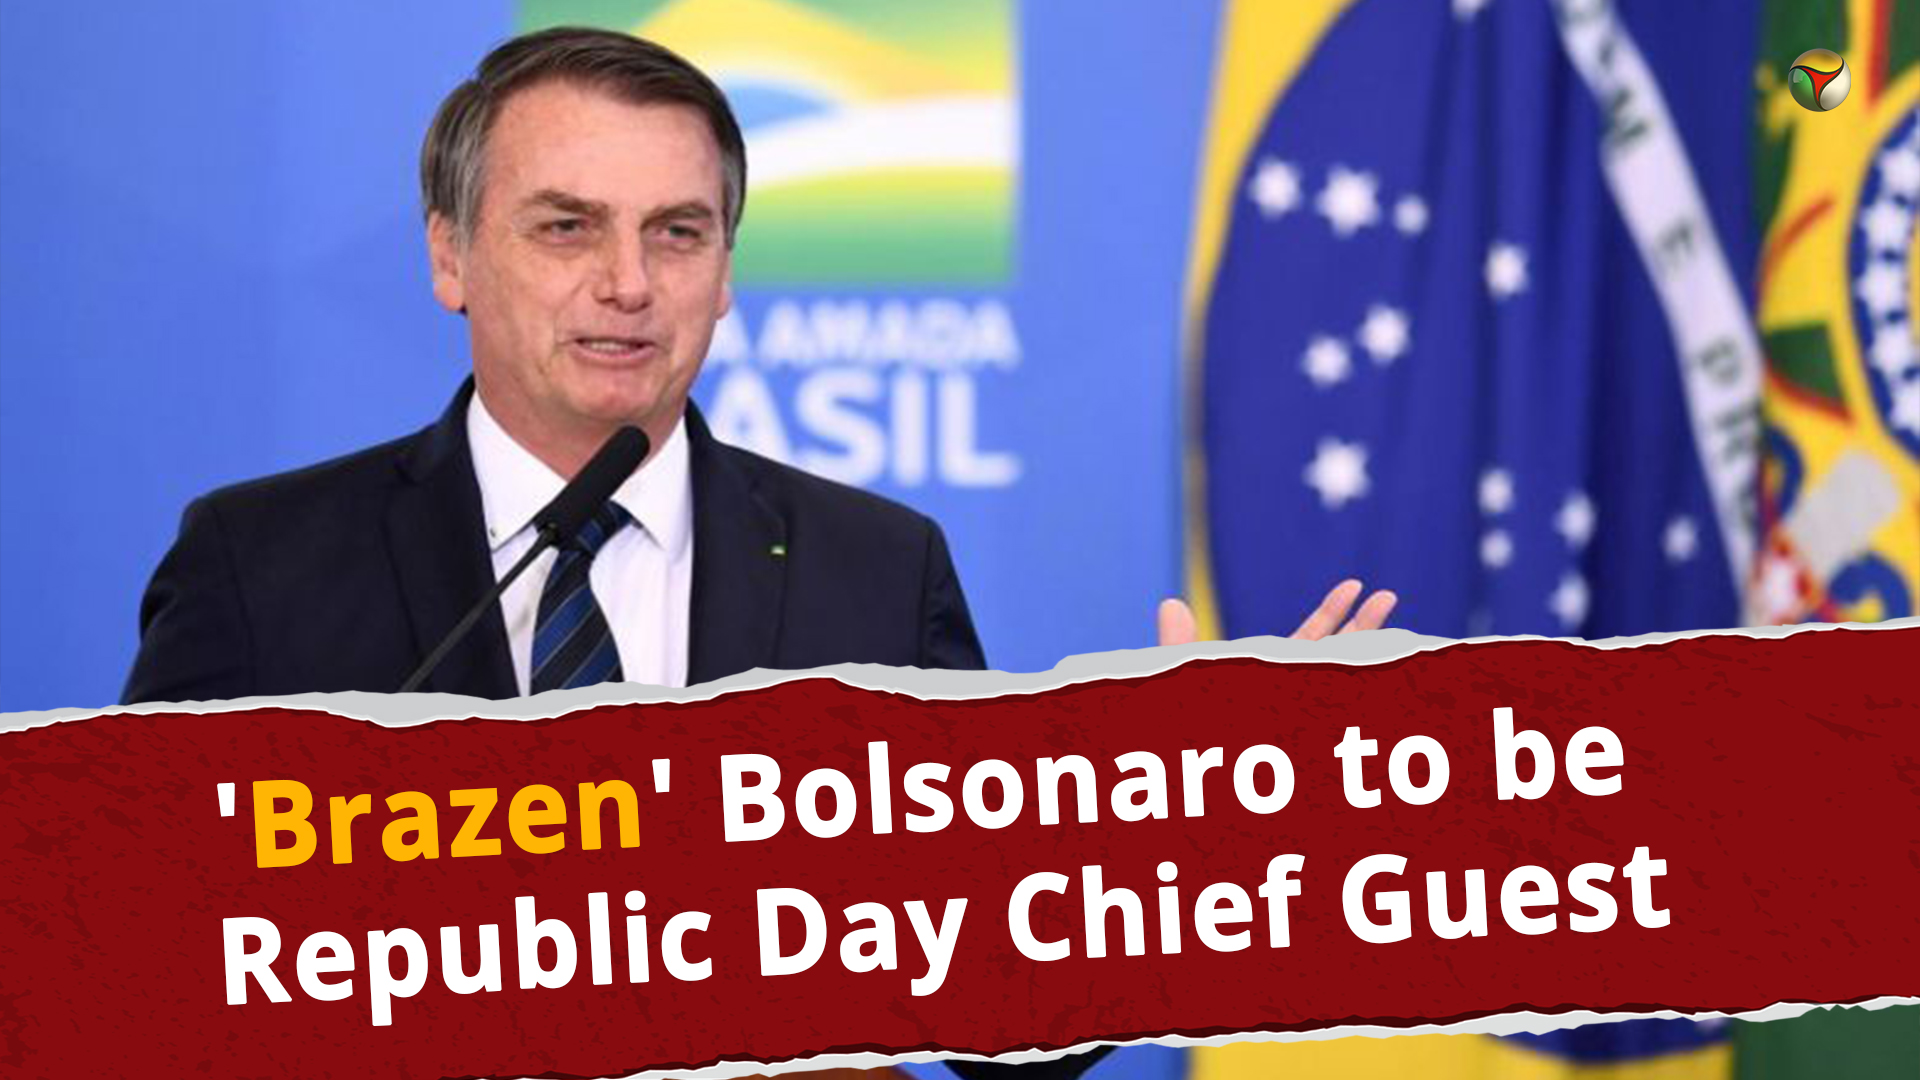 Brazen Bolsonaro to be Republic Day Chief Guest